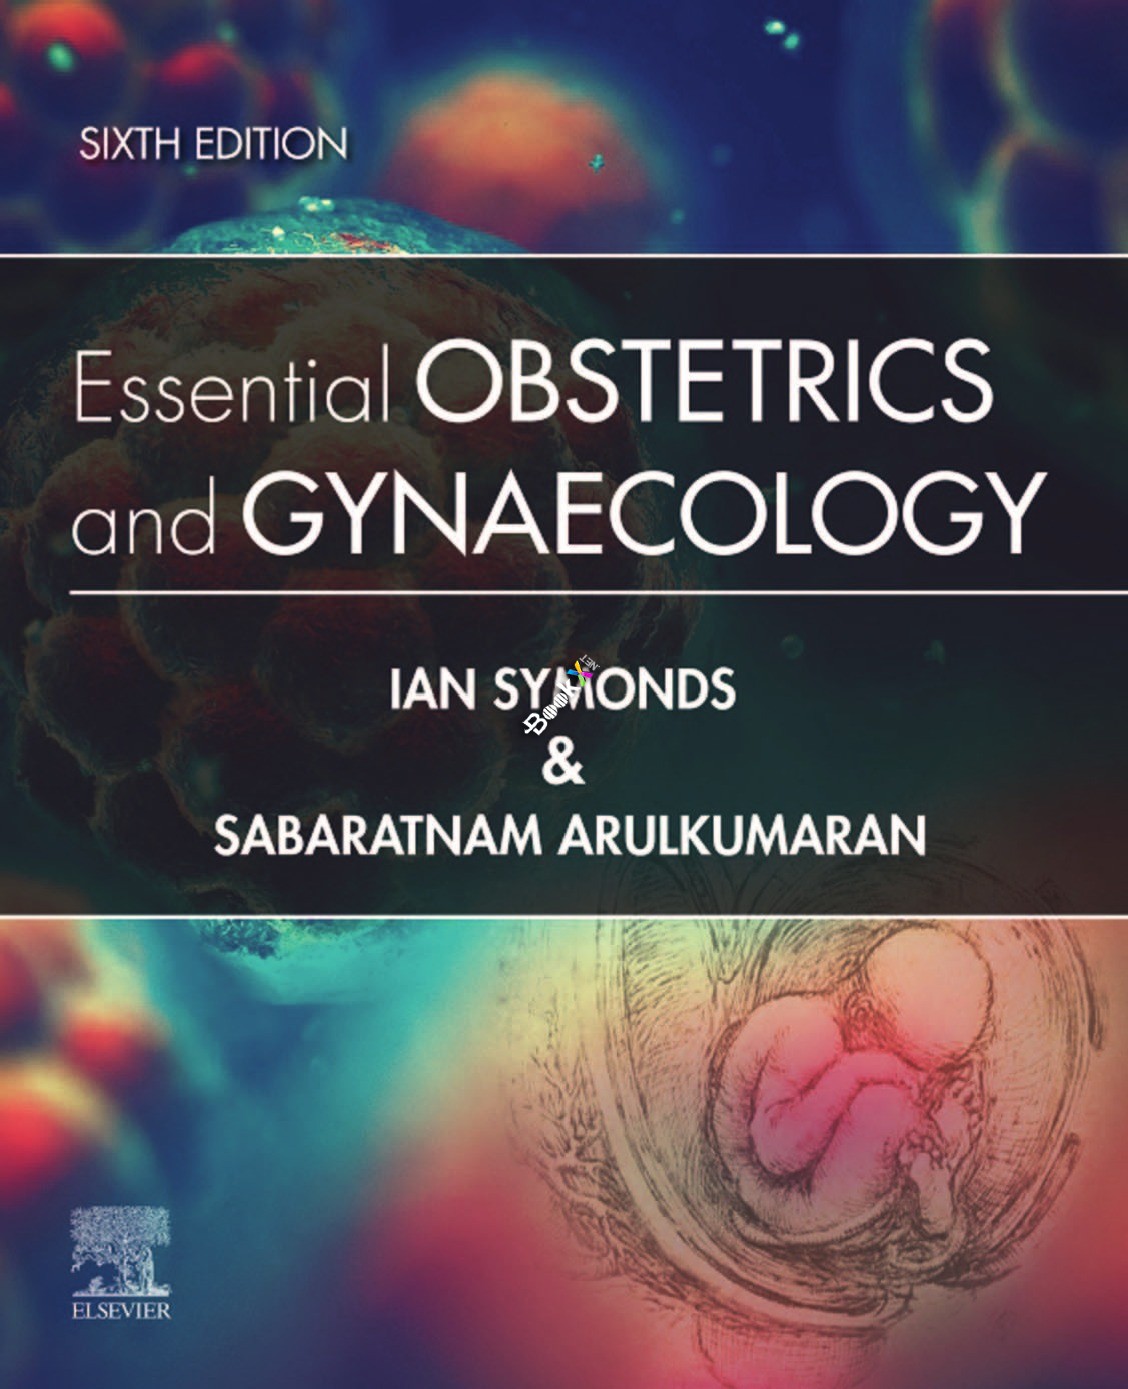 Essential Obstetrics and Gynaecology, Sixth Edition by Ian M. Symonds MB BS MMedSci DM FRCOG FRANZCOG , Sabaratnam Arulkumaran PhD DSc FRCSE FRCOG FRANZCOG (Hon) 